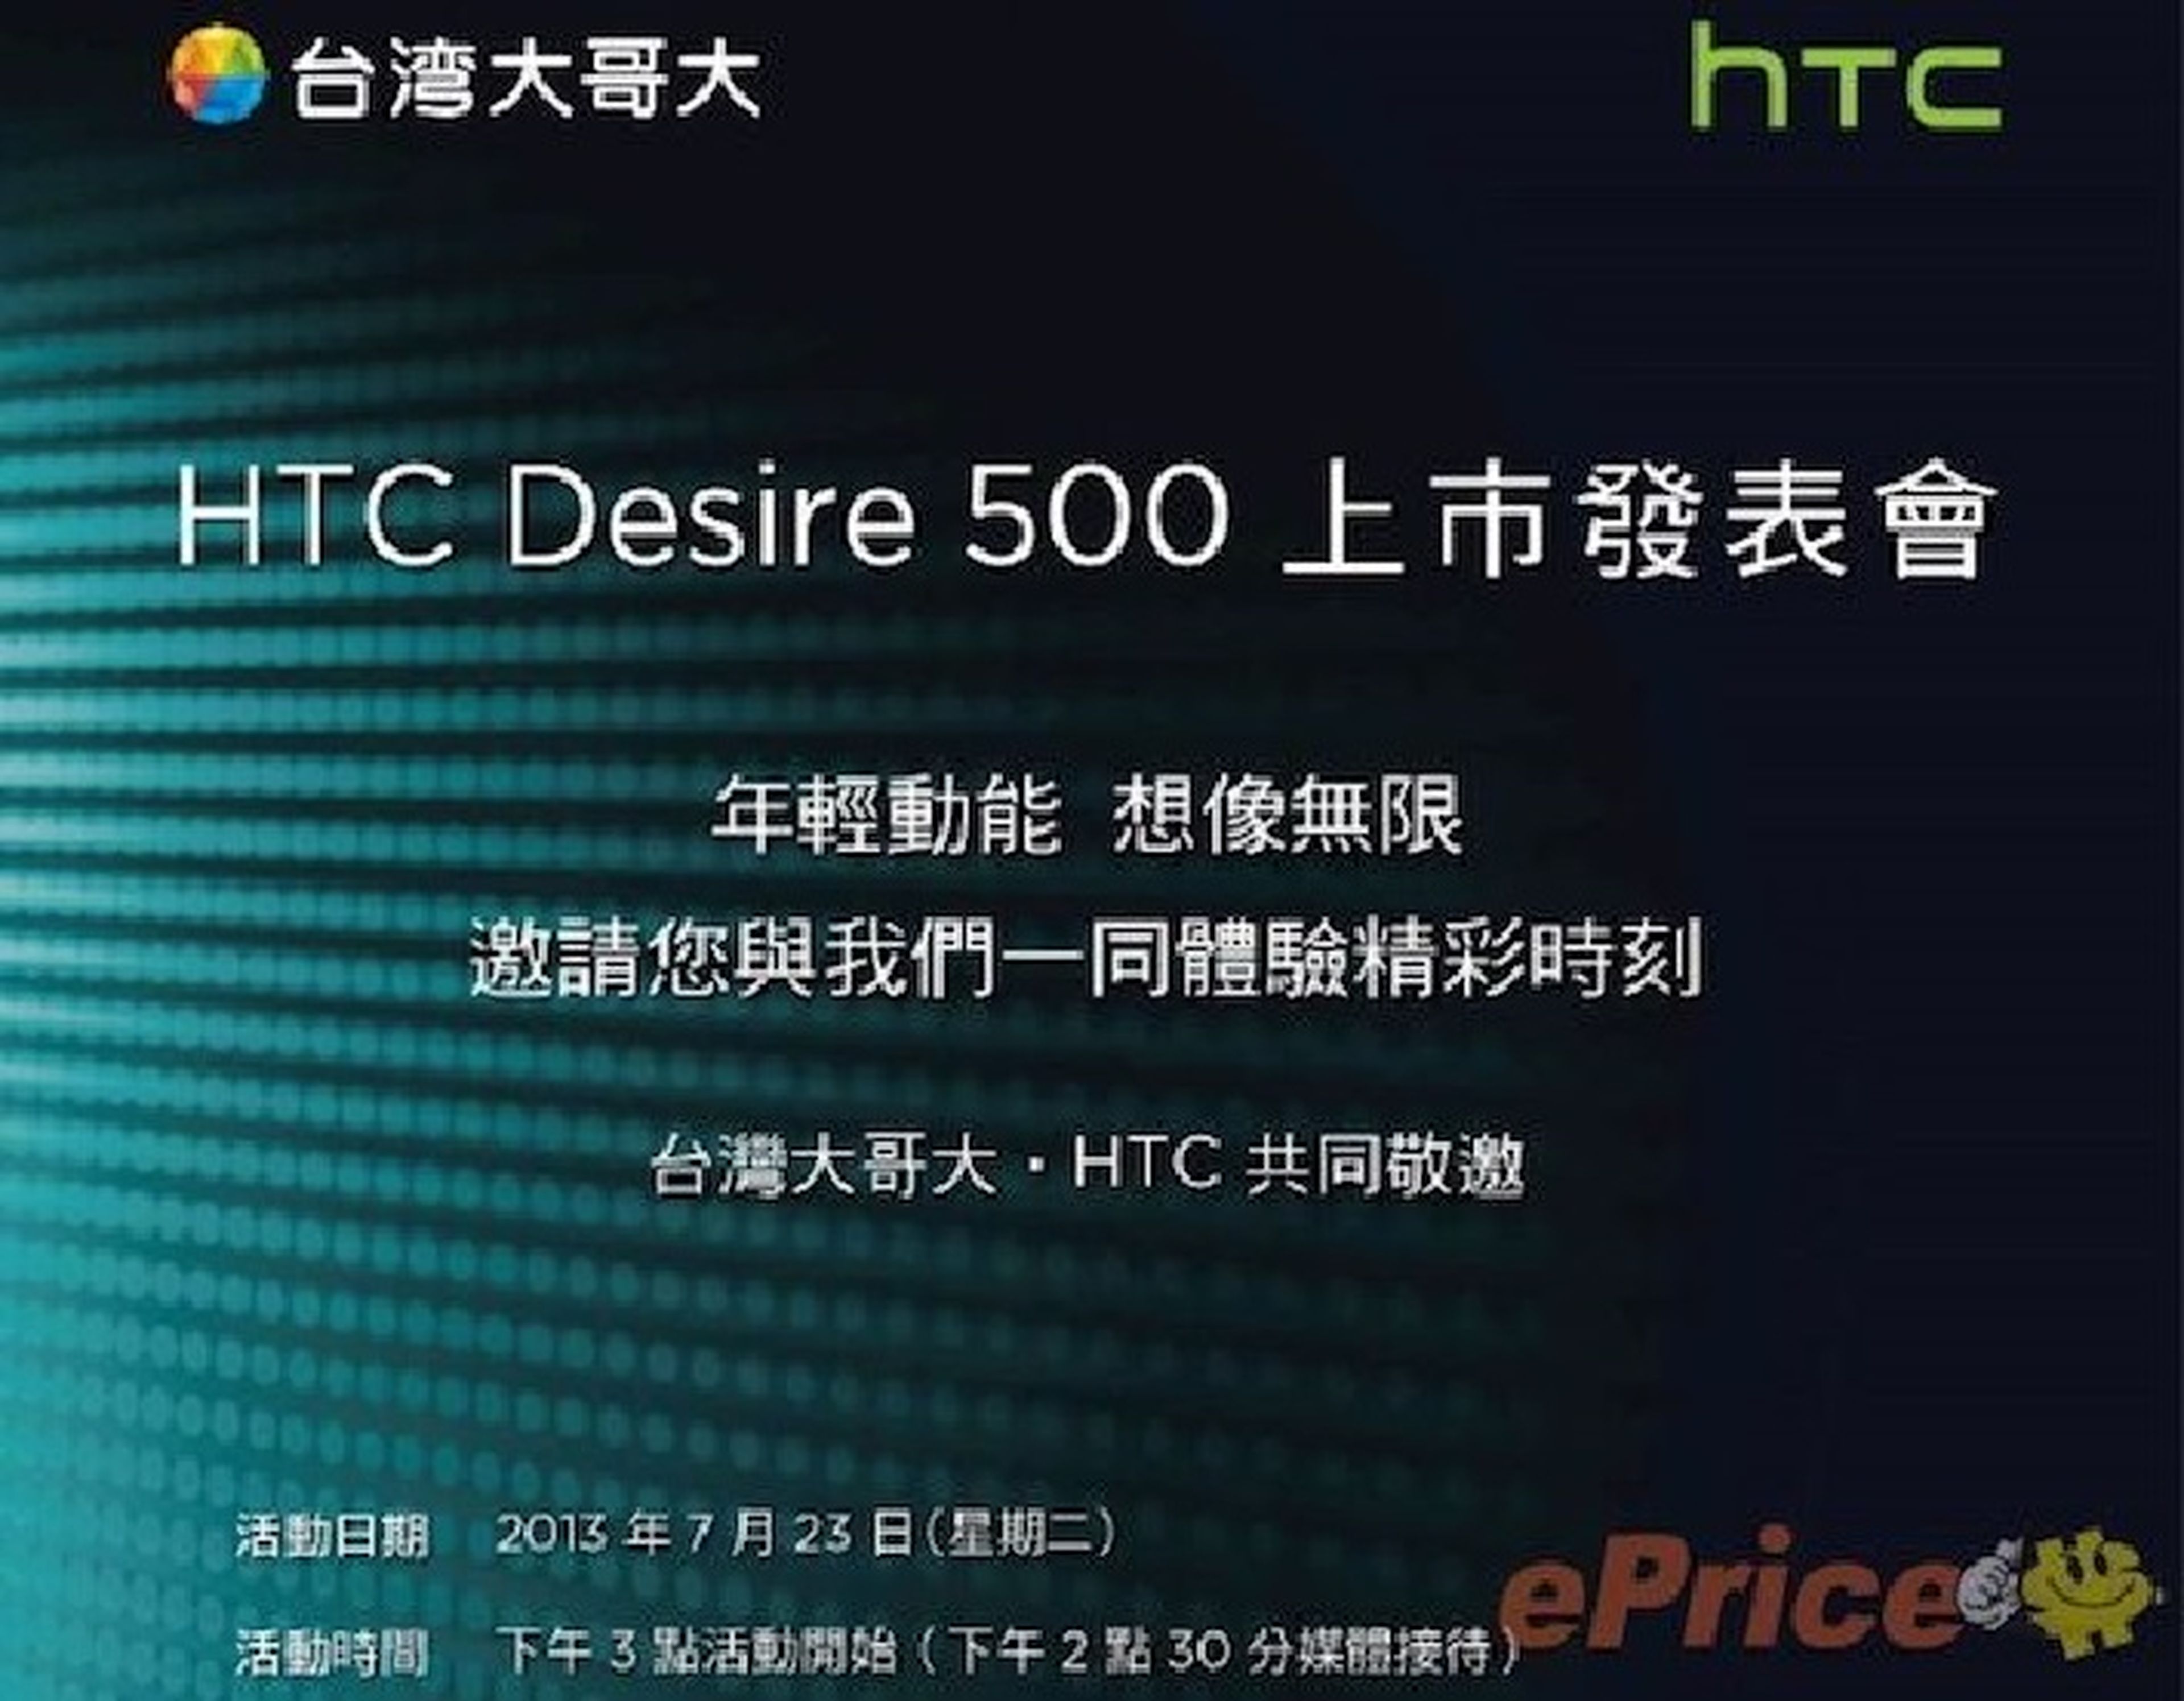 HTC anunciará su nuevo Desire 500 el próximo 23 de Julio